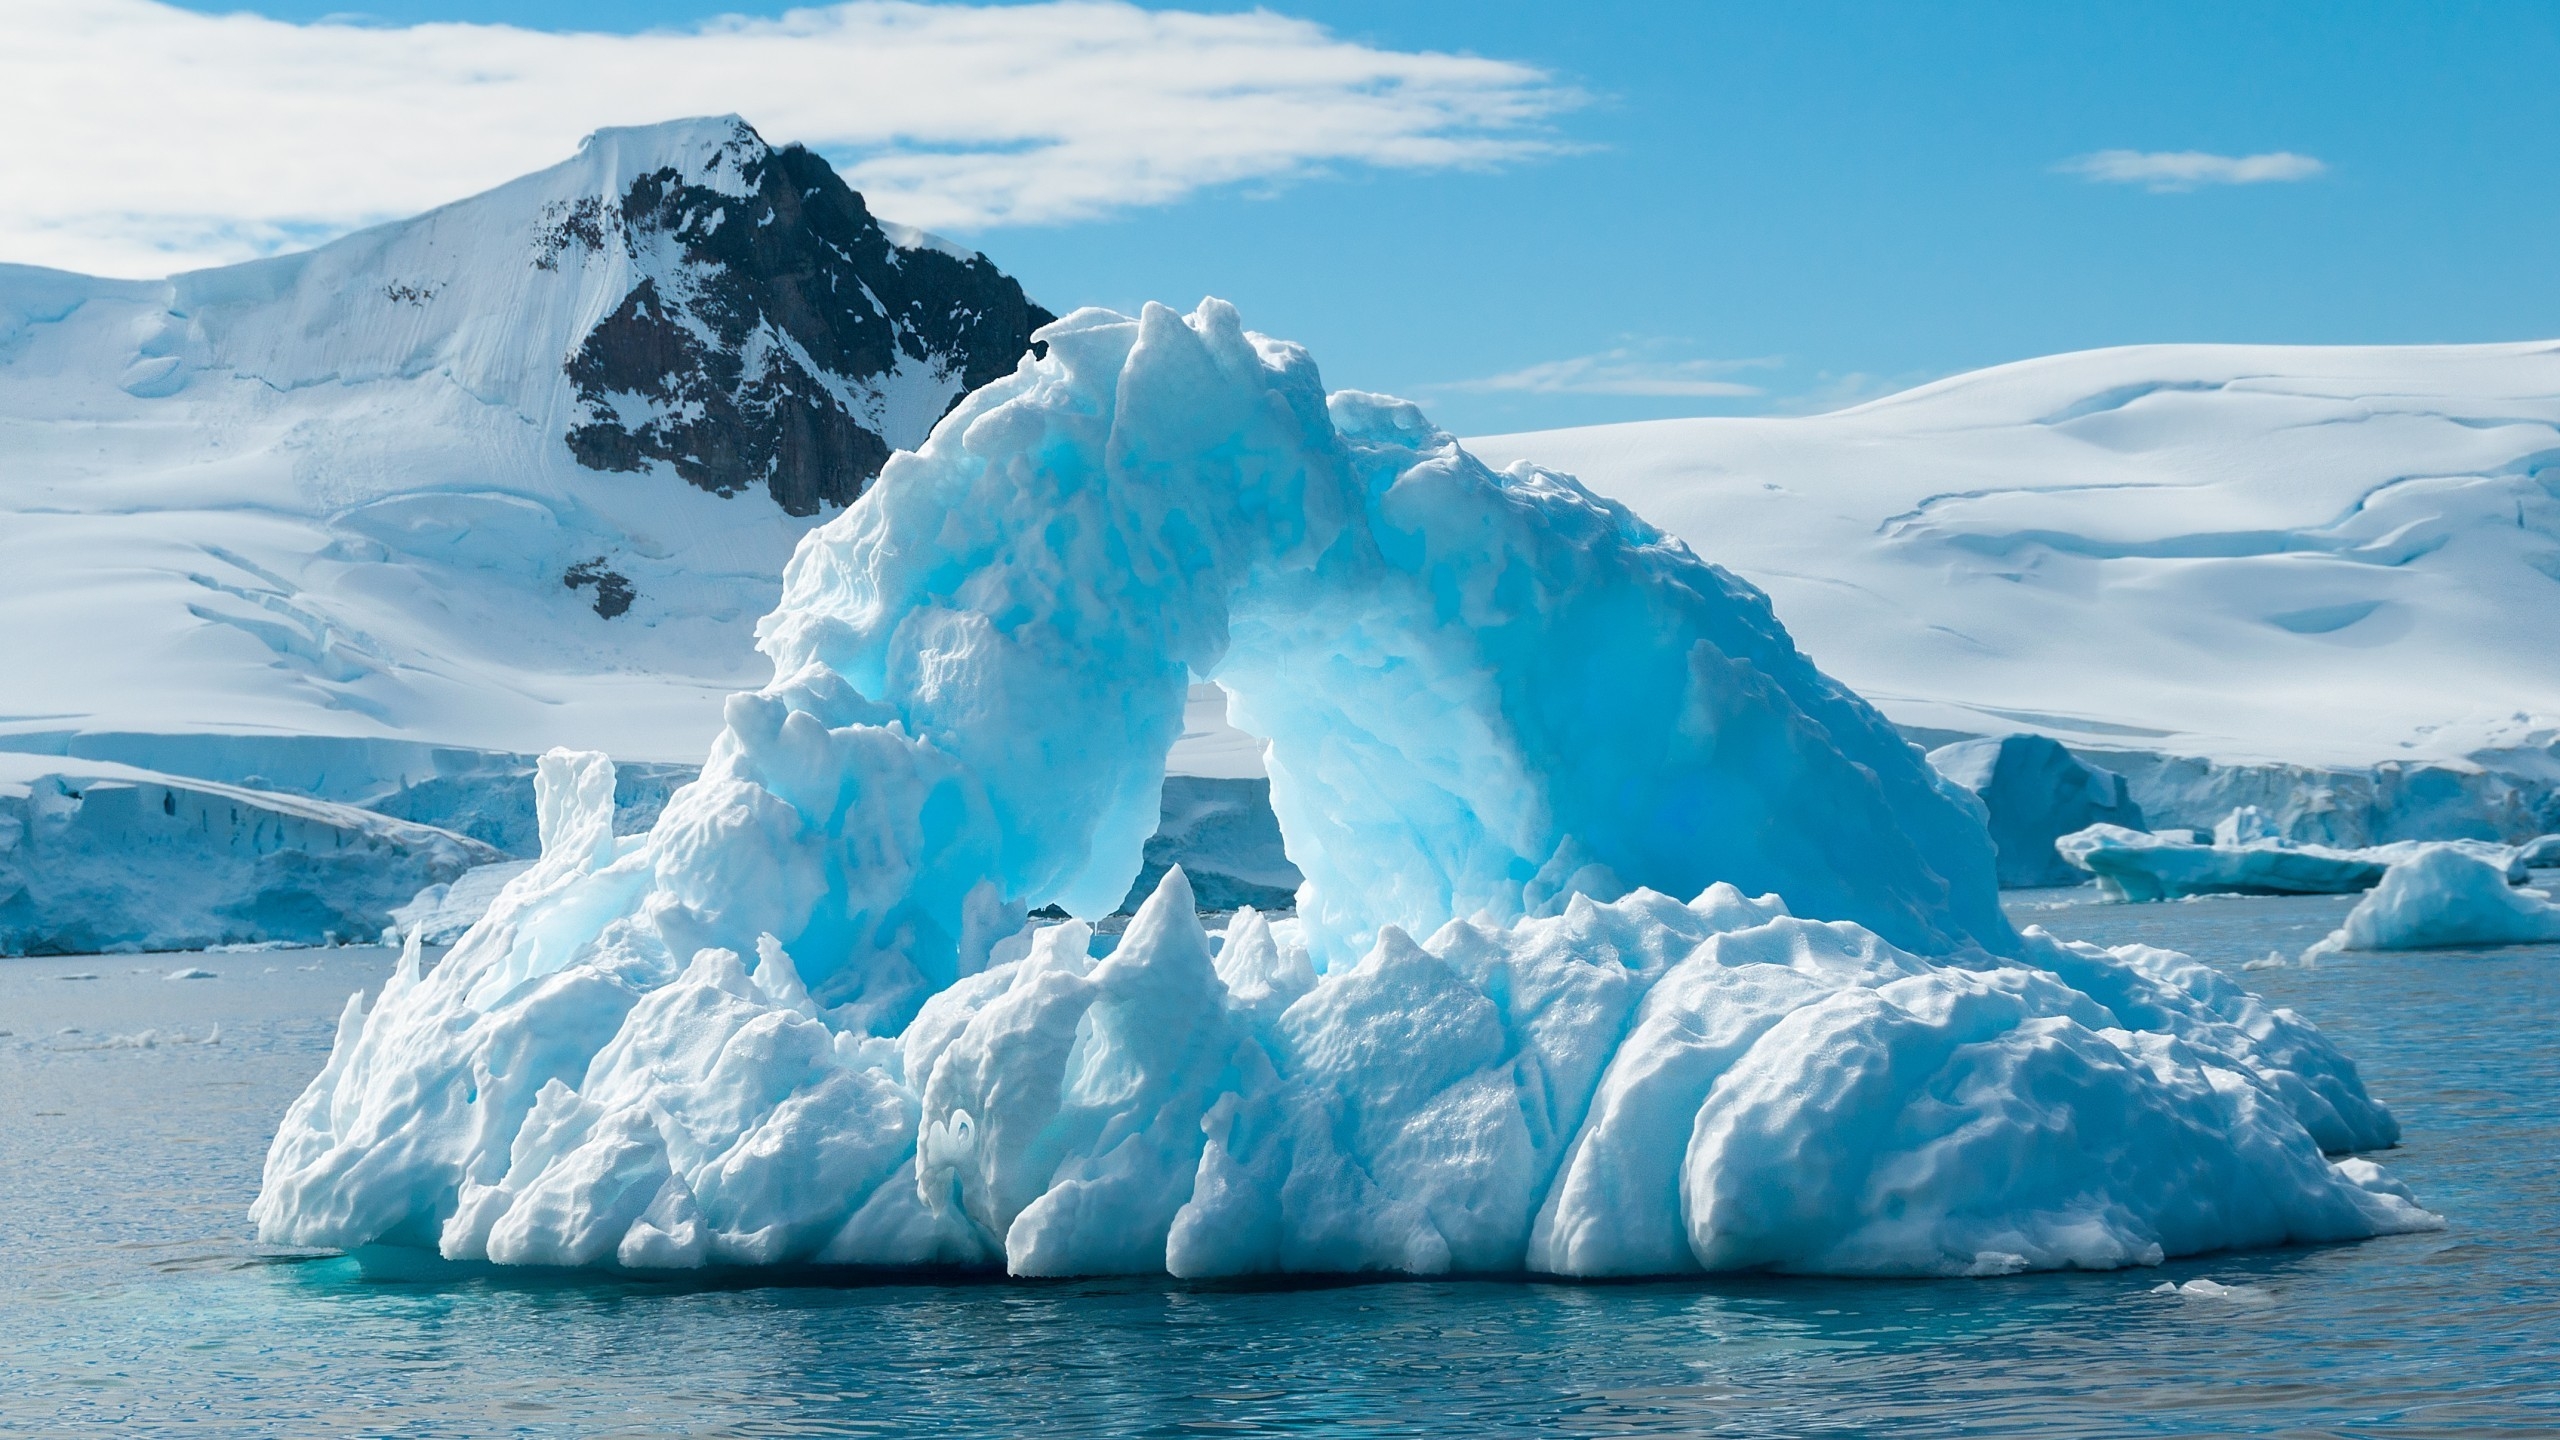 Blue Iceberg for 2560x1440 HDTV resolution